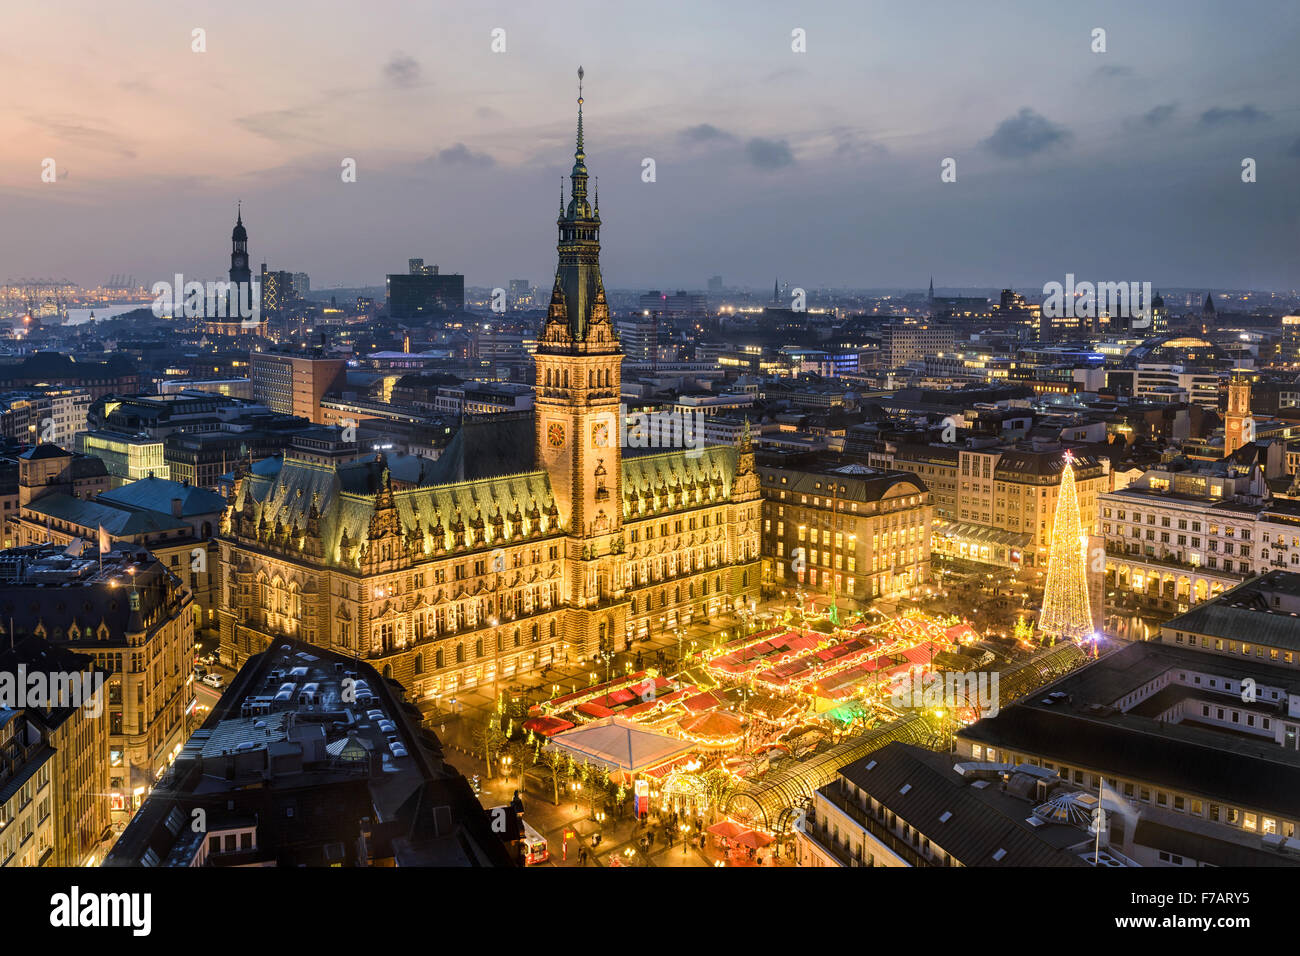 Vue aérienne de l'Hôtel de Ville avec le marché de Noël à Hambourg, Allemagne Banque D'Images